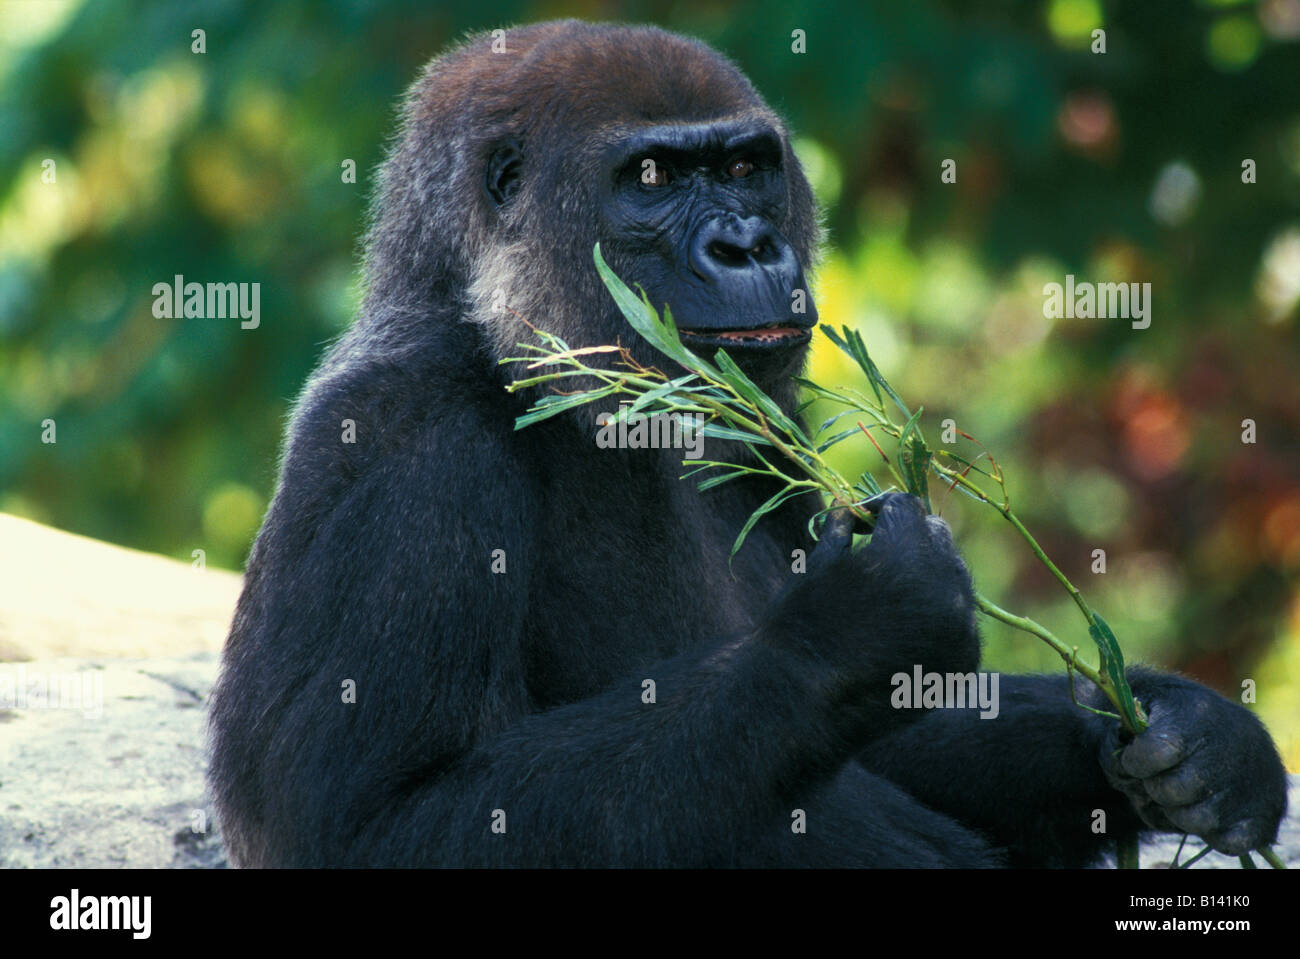 Western pianura gorilla gorilla Gorilla gorilla nativa per Africa occidentale e centrale e Africa centrale pianura gorilla WESTE nativo Foto Stock